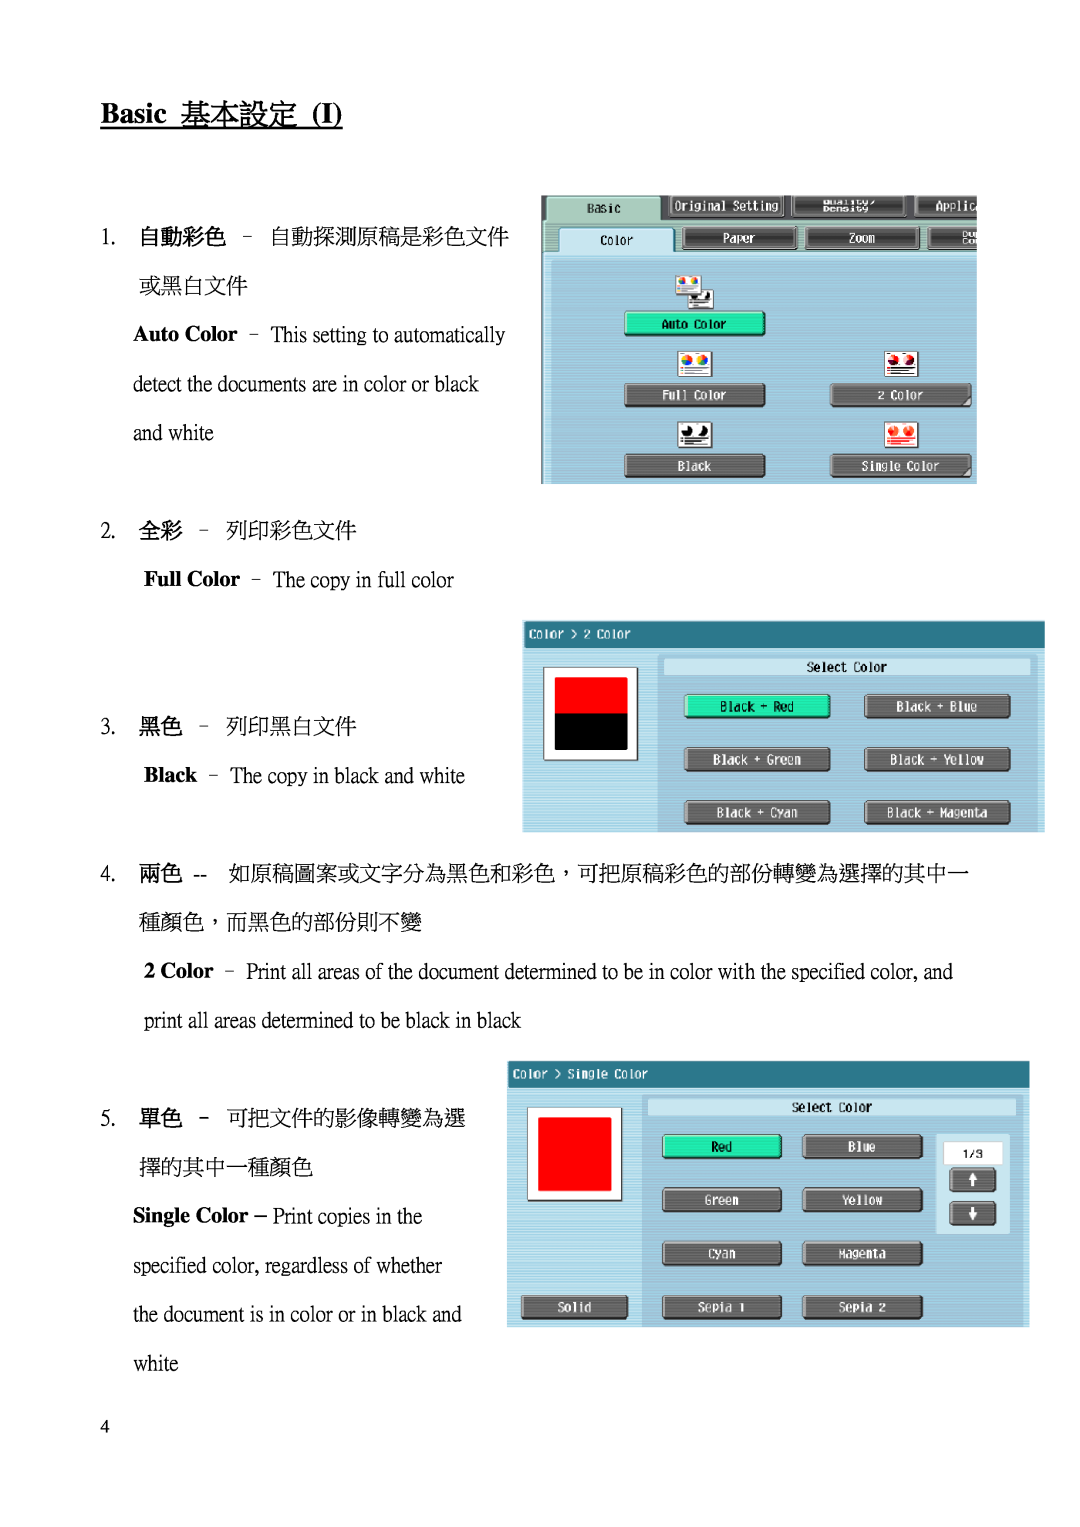 Konica Minolta C552 Basic 基本設定, 1. 自動彩色 - 自動探測原稿是彩色文件 或黑白文件, 2. 全彩 - 列印彩色文件, 3. 黑色 - 列印黑白文件, 5. 單色 - 可把文件的影像轉變為選 擇的其中一種顏色 